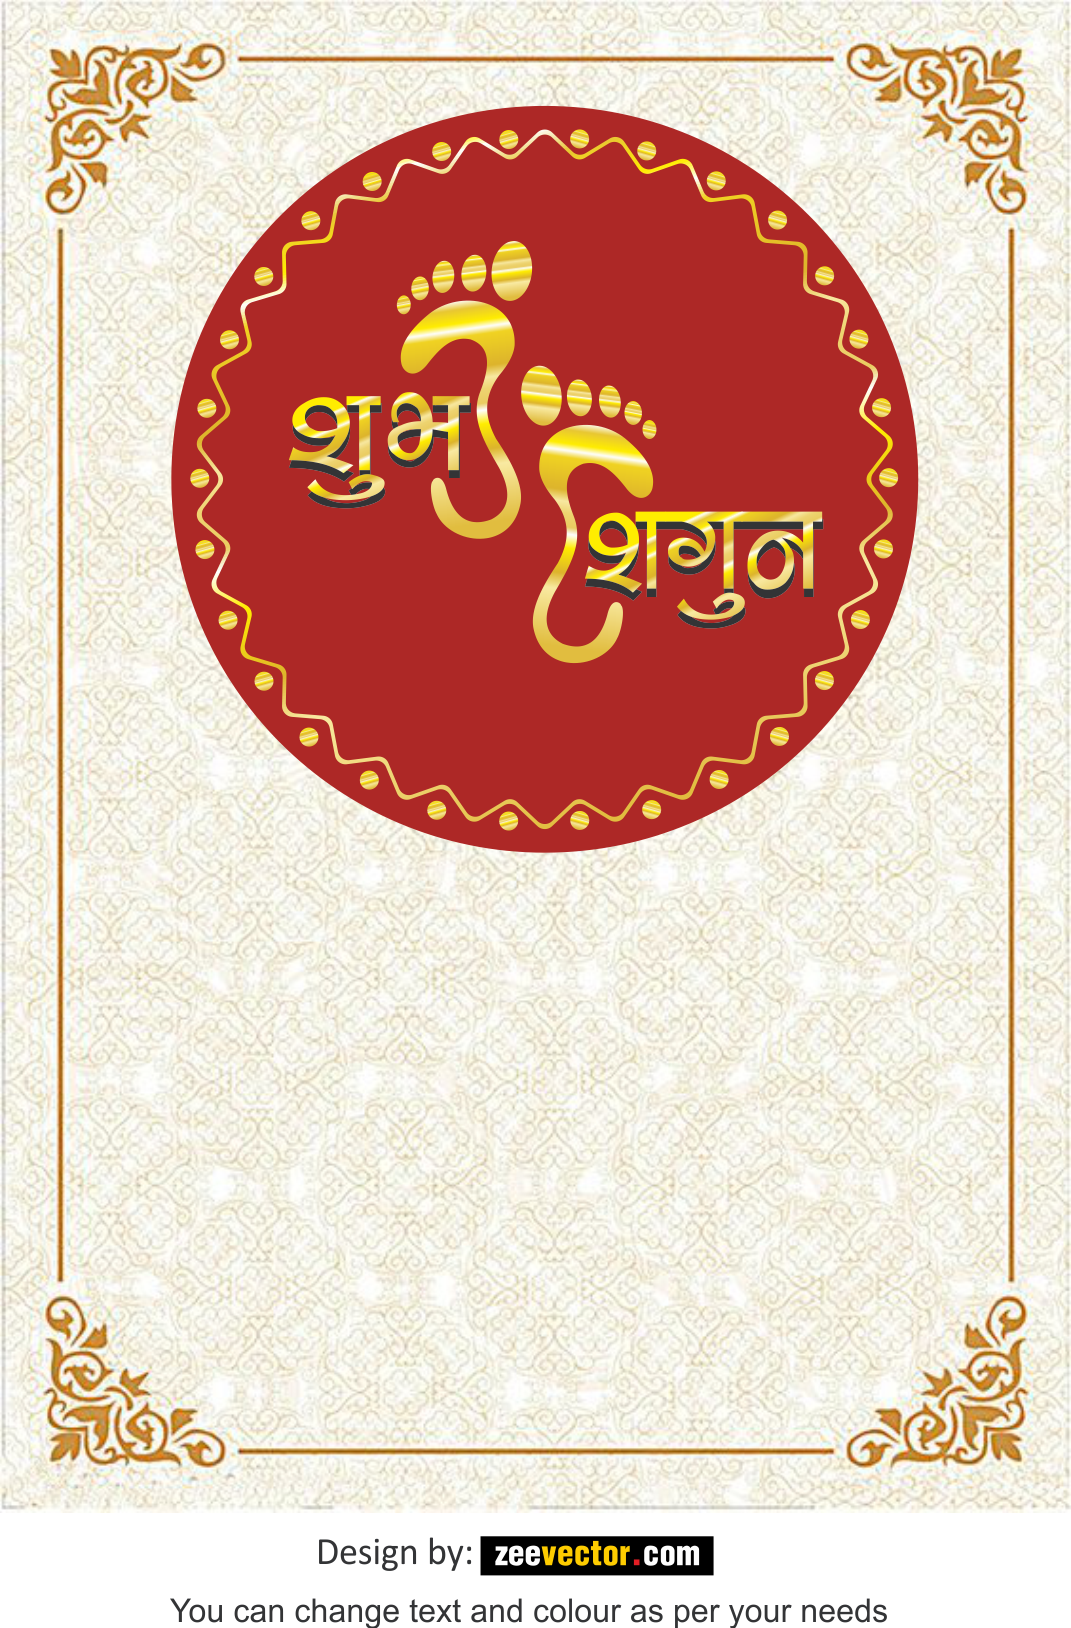 Bản vector thiệp cưới Hindu miễn phí là sự lựa chọn hoàn hảo cho những ai đang tìm kiếm thiệp cưới độc đáo. Thiết kế đầy màu sắc và chi tiết sẽ đem lại một ấn tượng khó quên cho mọi người nhìn vào. Hãy xem ngay để khám phá vẻ đẹp độc đáo của thiệp cưới Hindu.